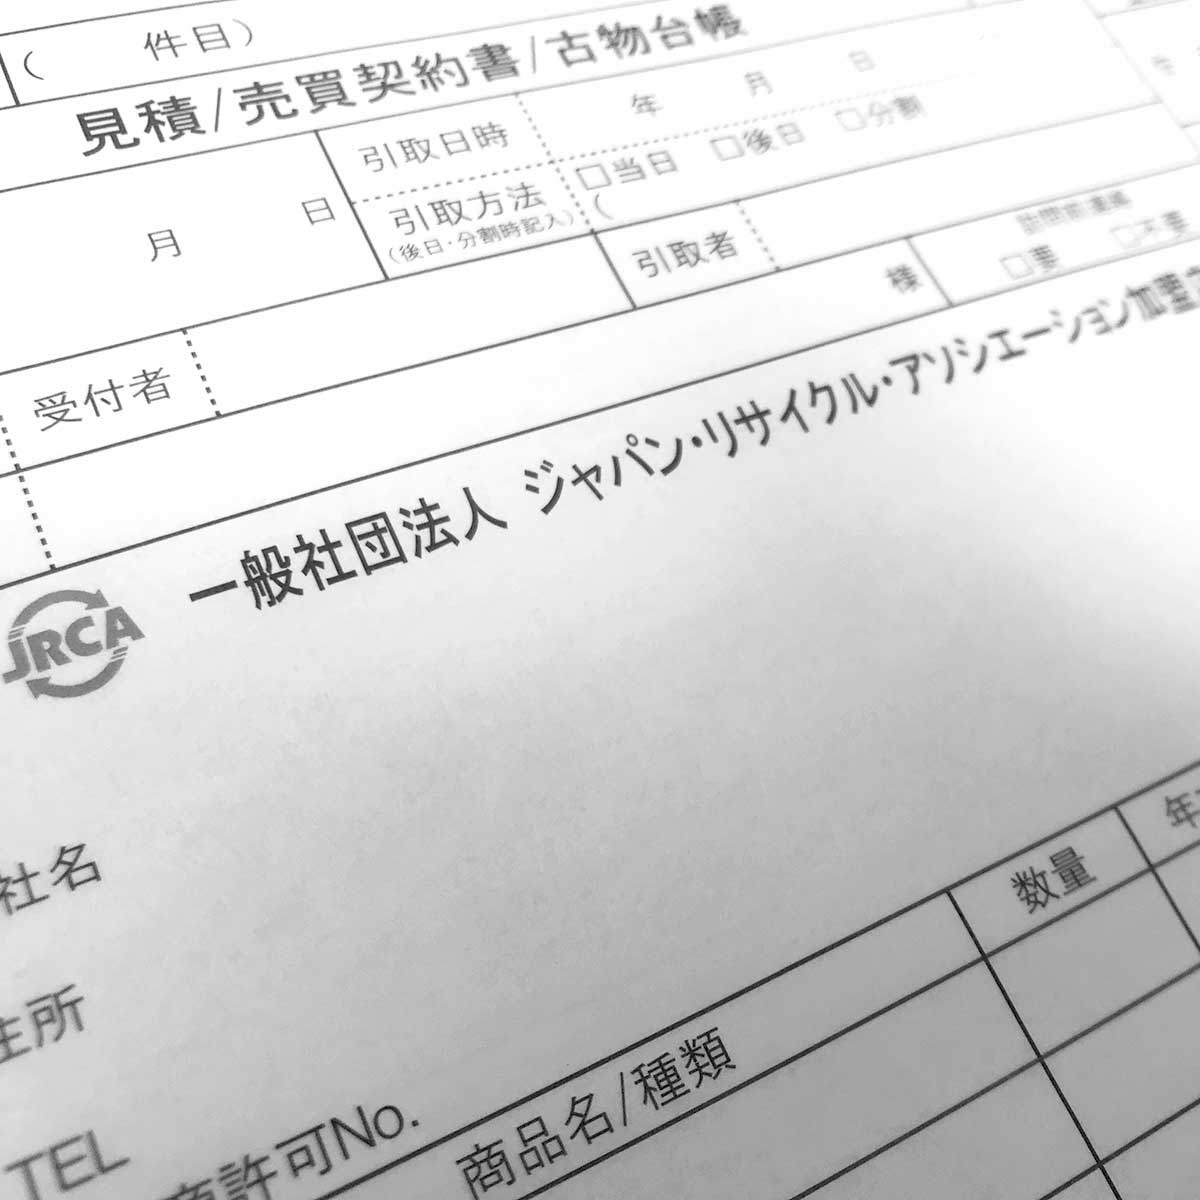 JRCA、「売買契約書」をJRCA非会員企業にも」 :: リユース経済新聞